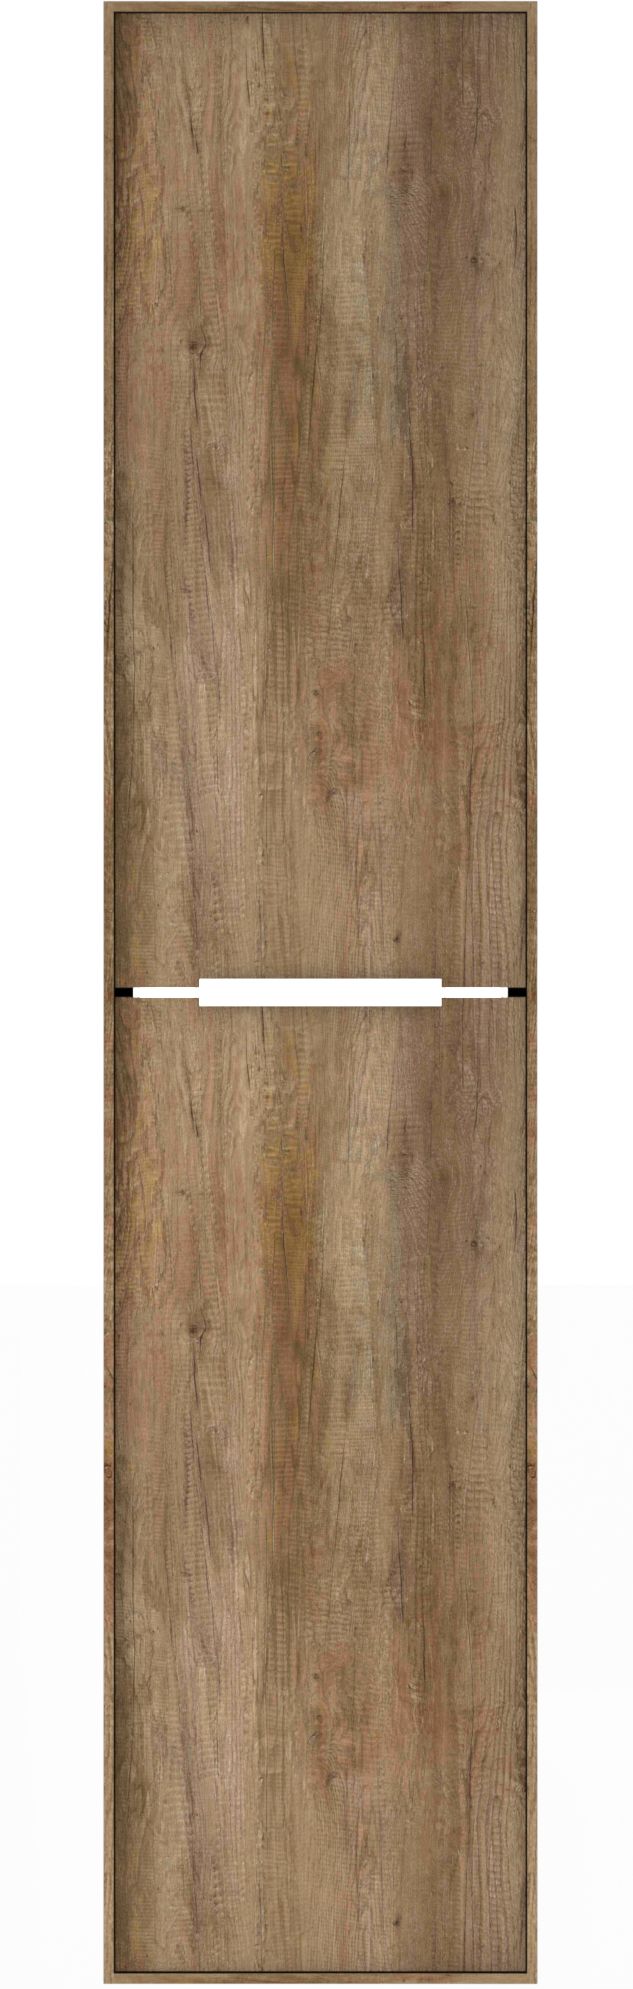 Cassino kolomkast 160 cm grey oak